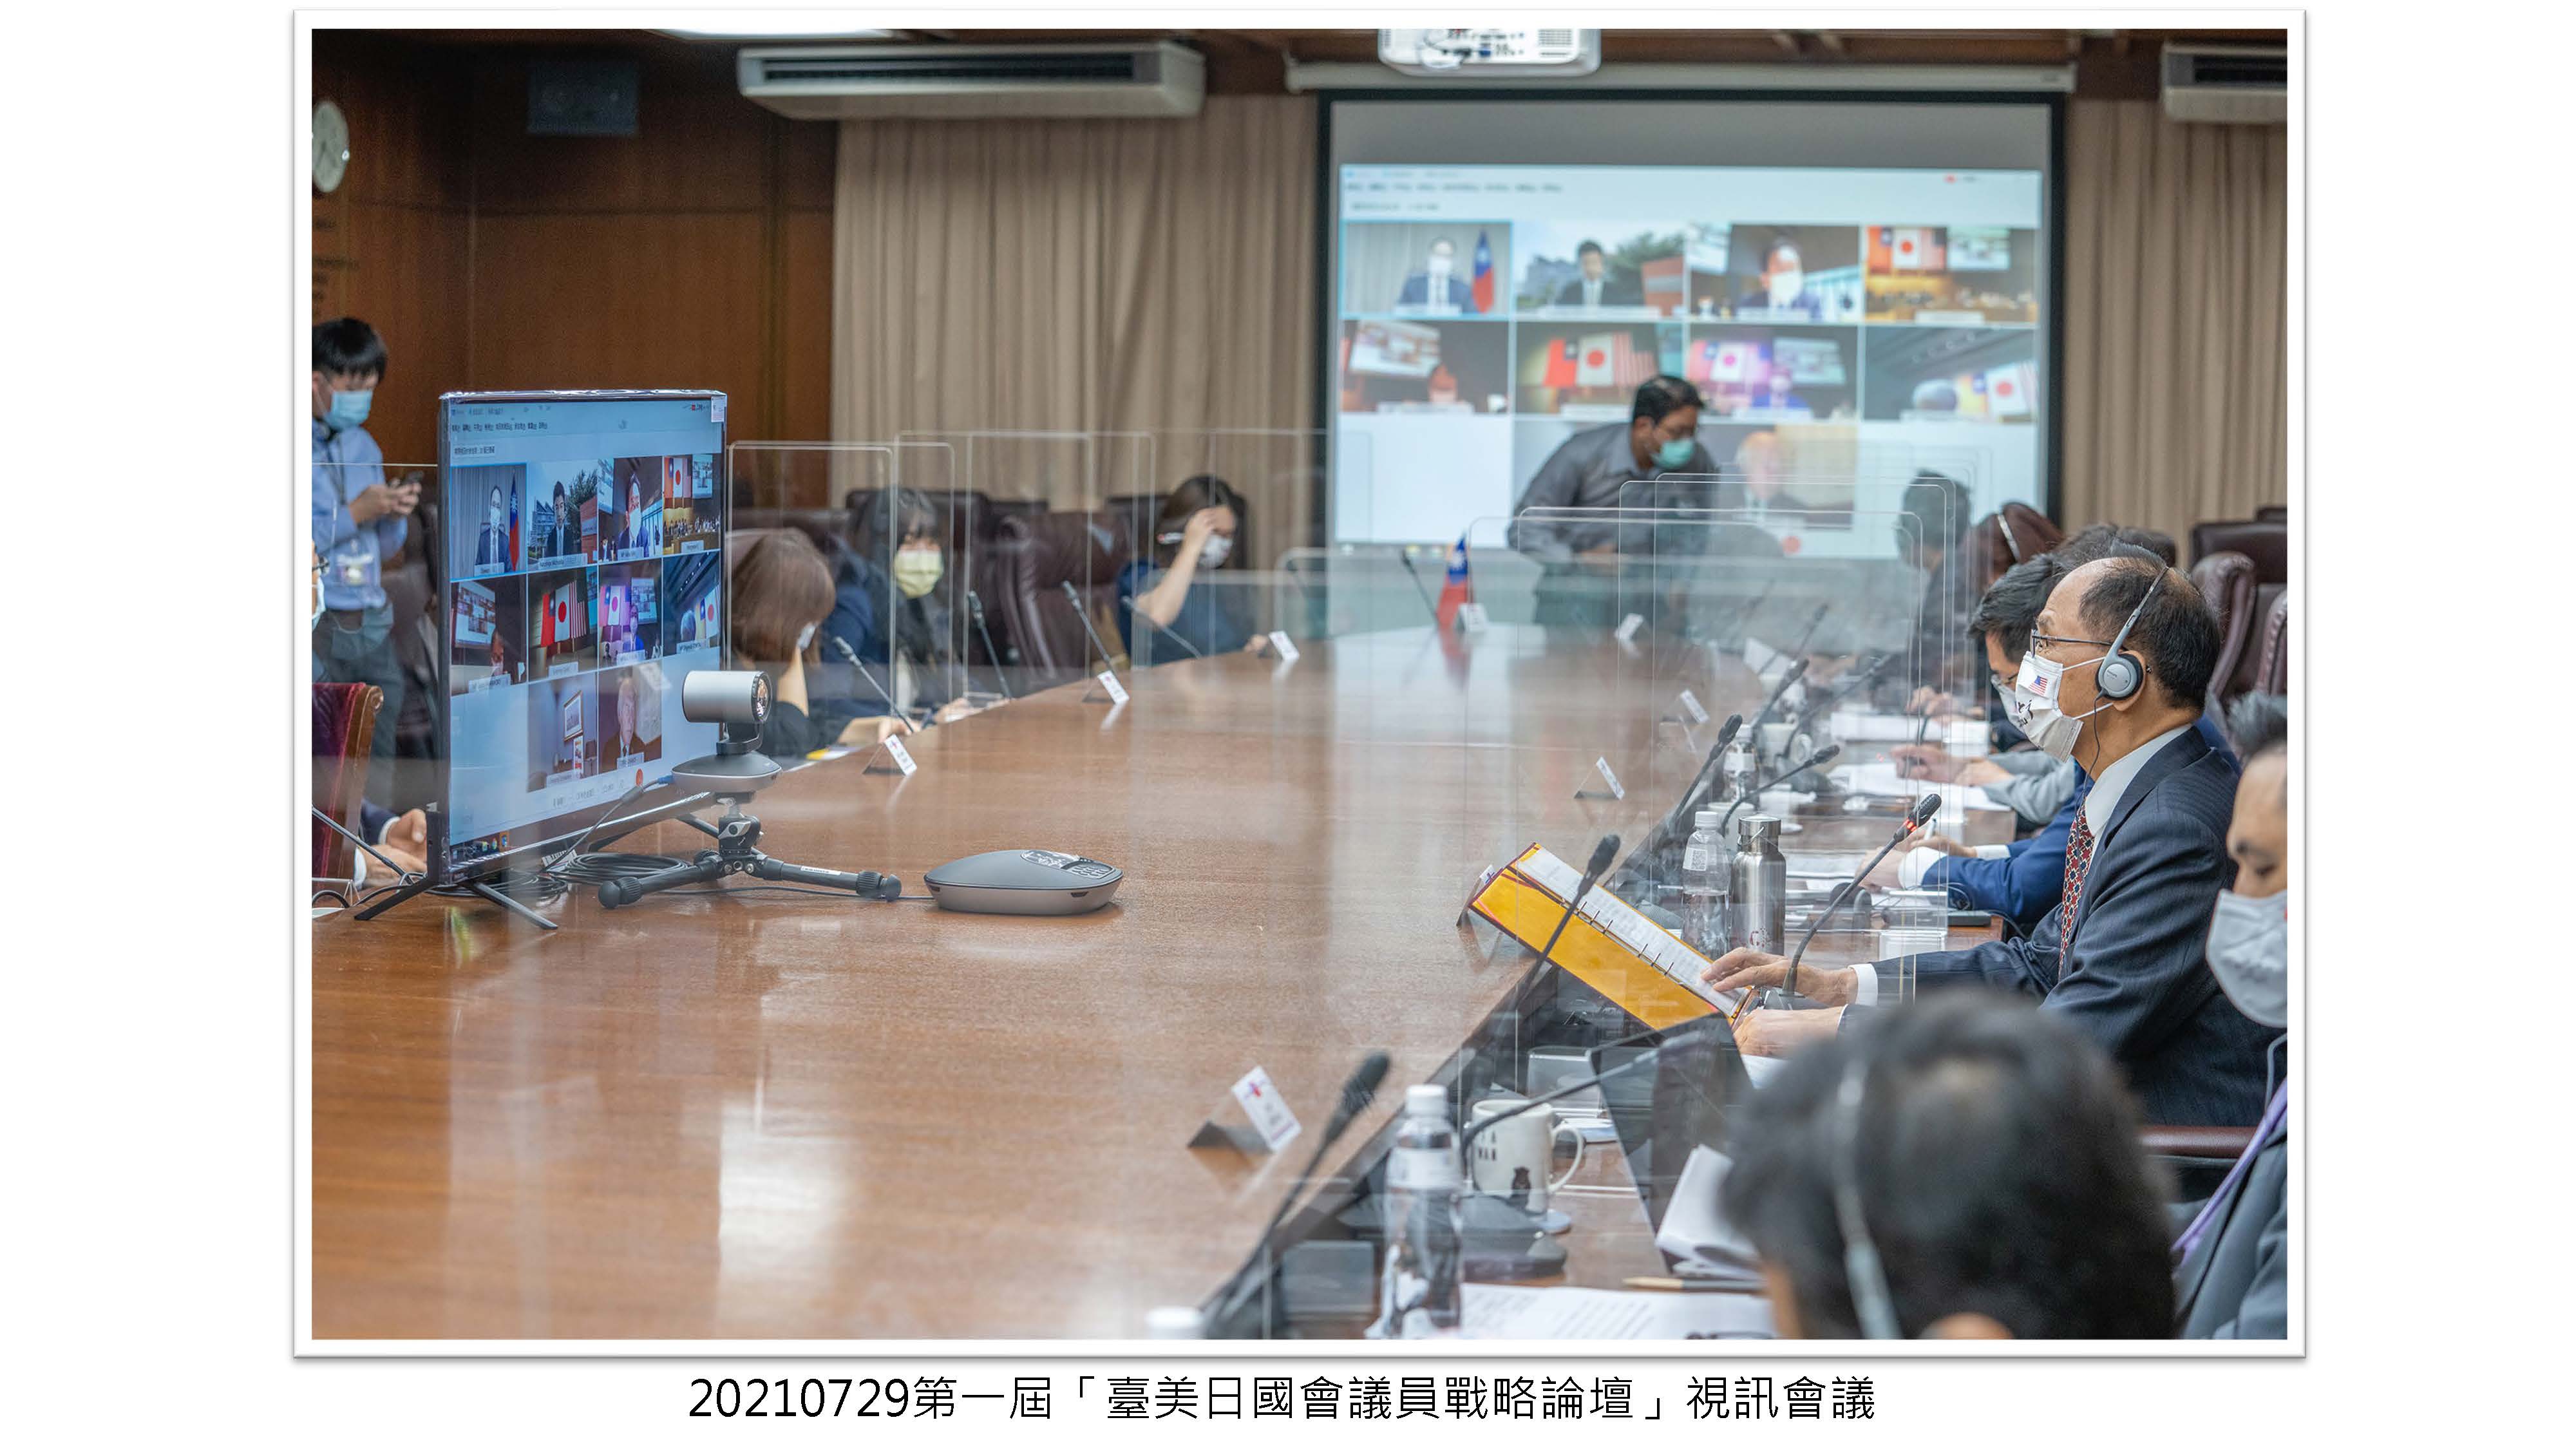 第一屆「臺美日國會議員戰略論壇」視訊會議封面照